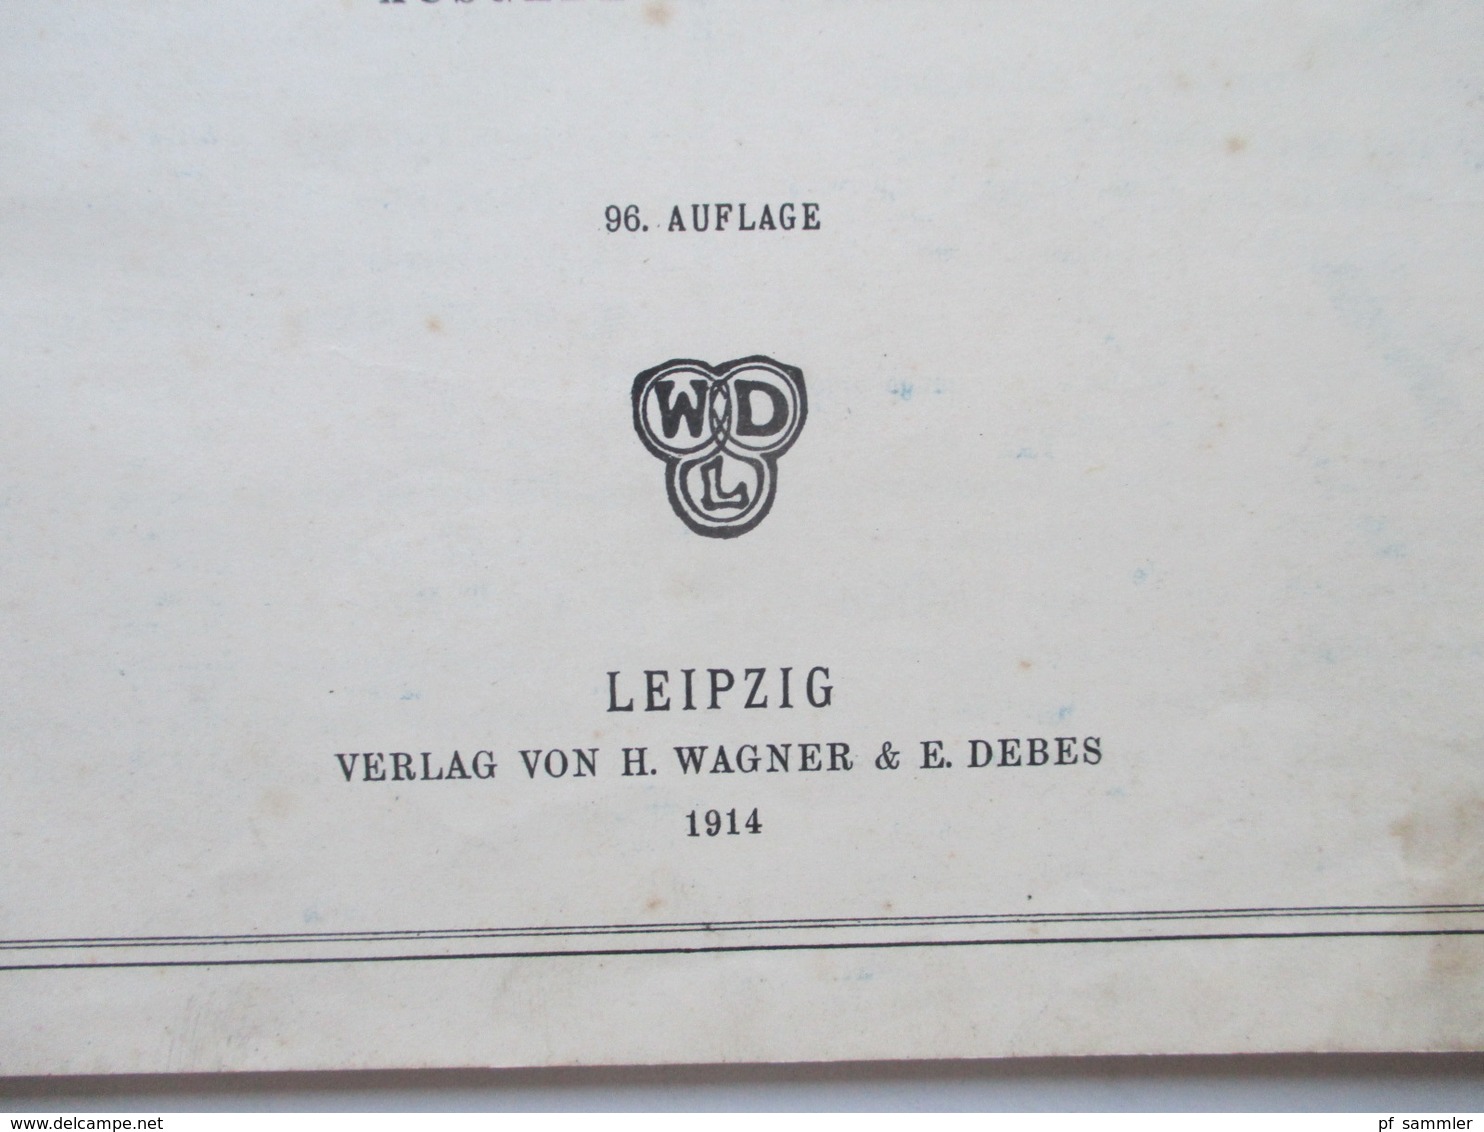 Debes Schulatlas Mit 76 Karten Leipzig H. Wagner & E. Debes. Jahr 1914 - Maps Of The World